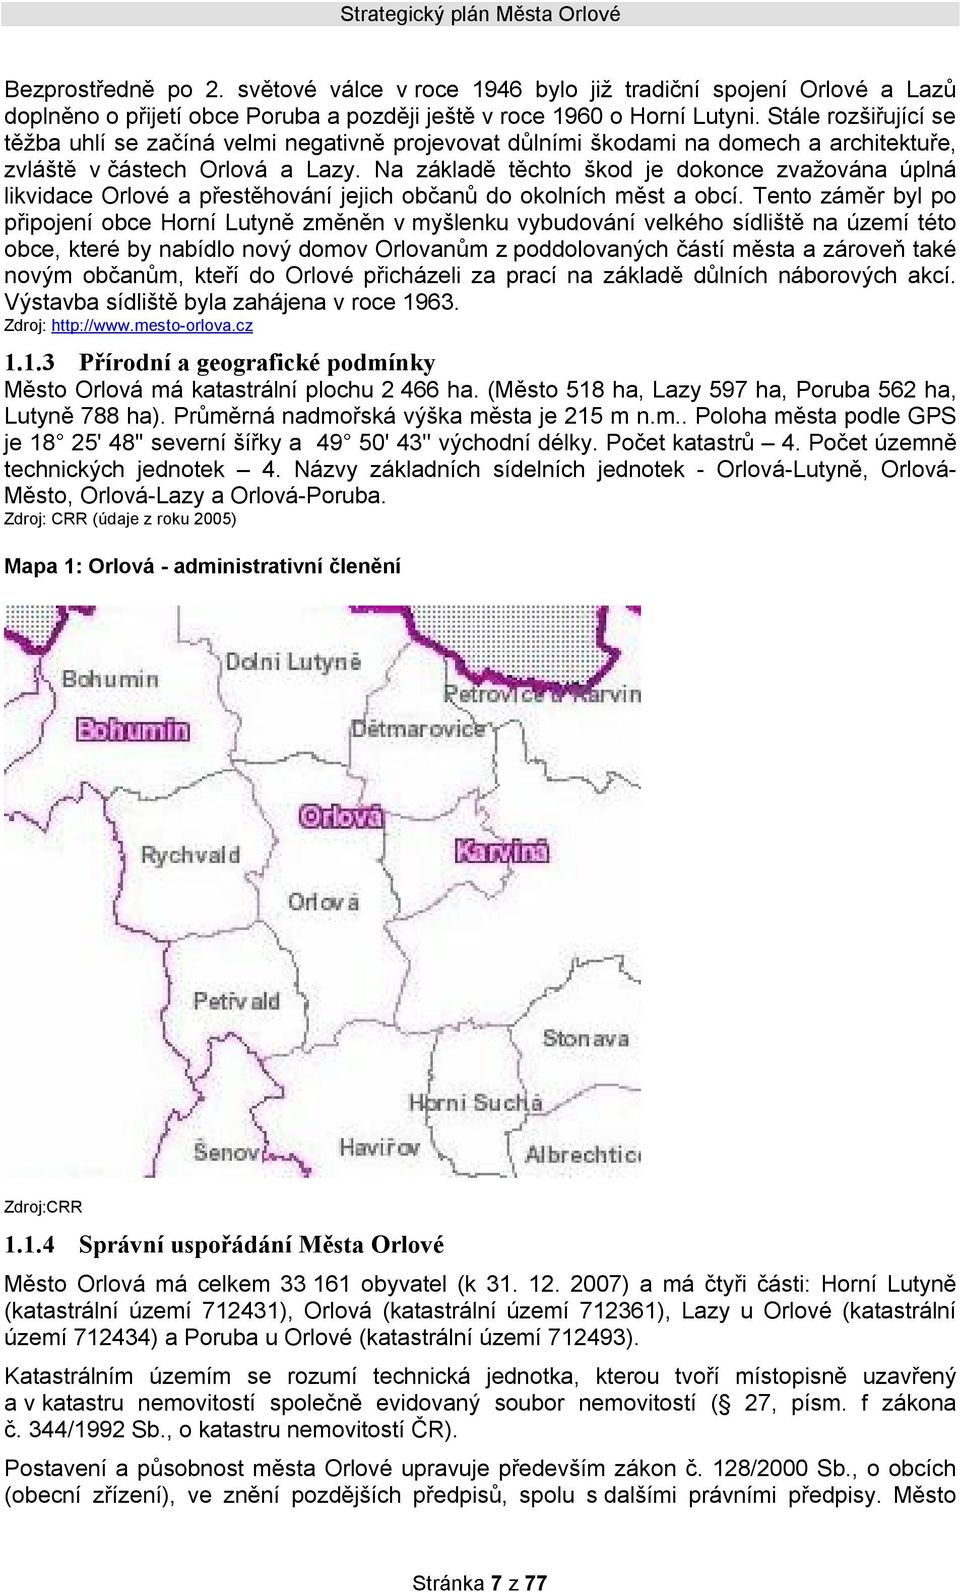 Na základě těchto škod je dokonce zvažována úplná likvidace Orlové a přestěhování jejich občanů do okolních měst a obcí.